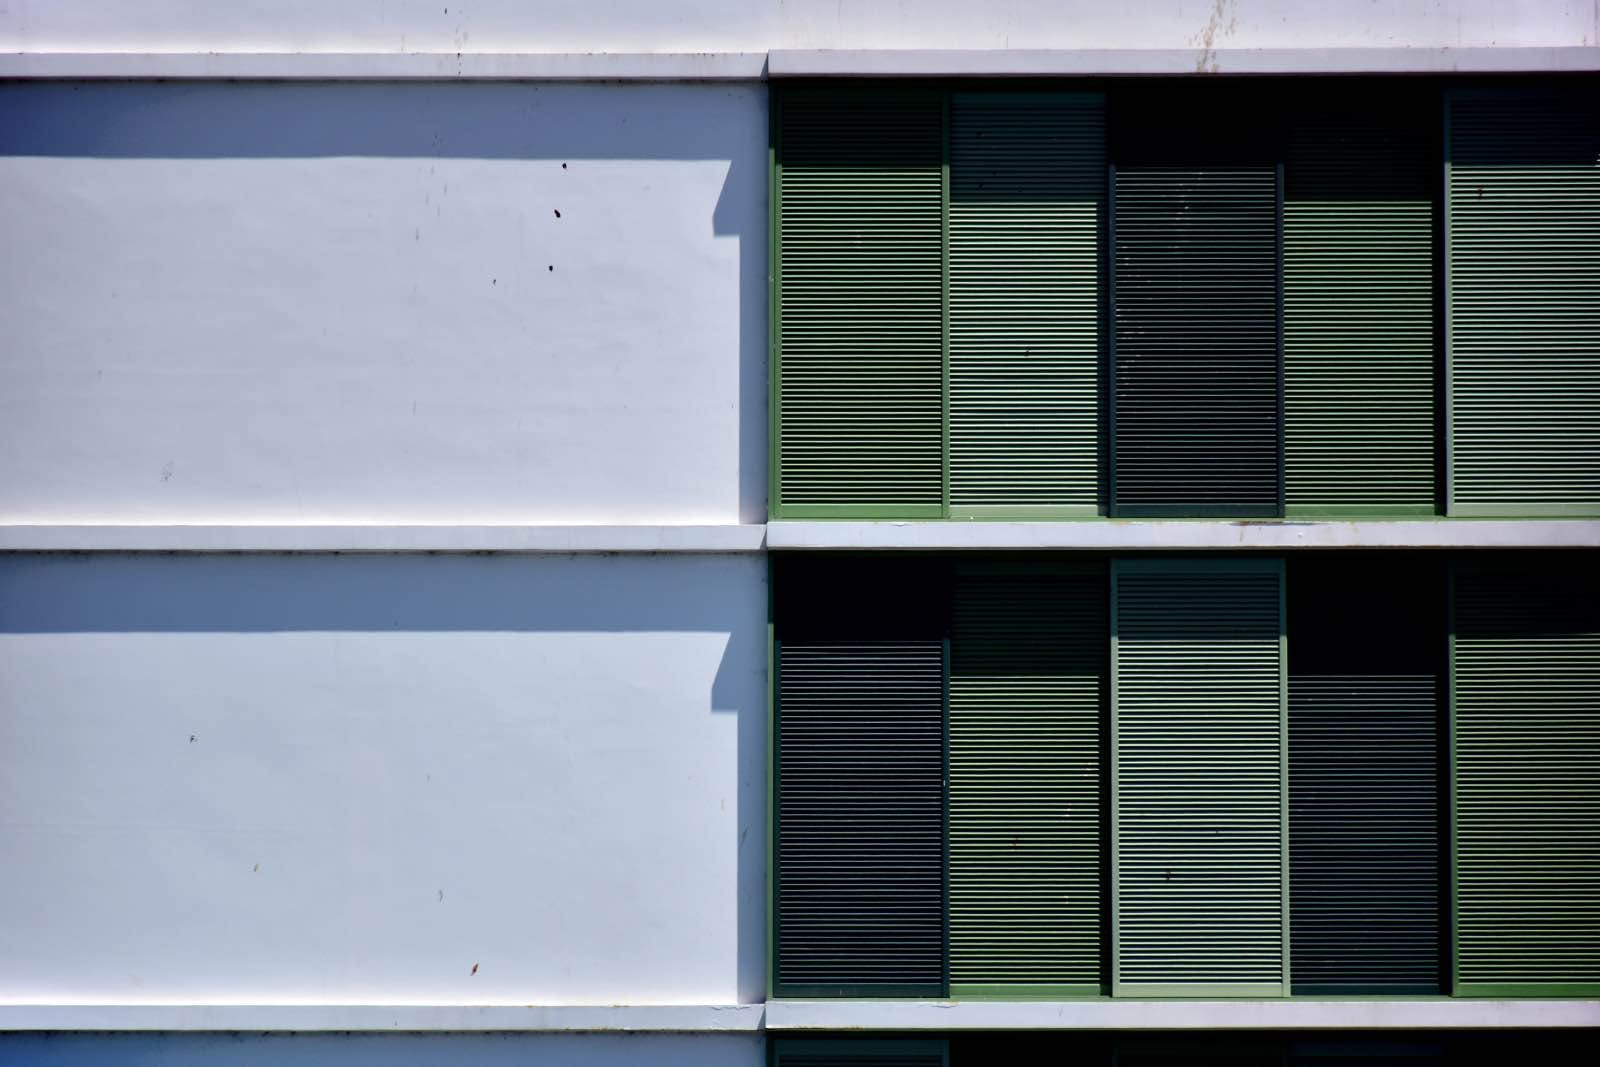 edificio con contraventanas correderas verdes